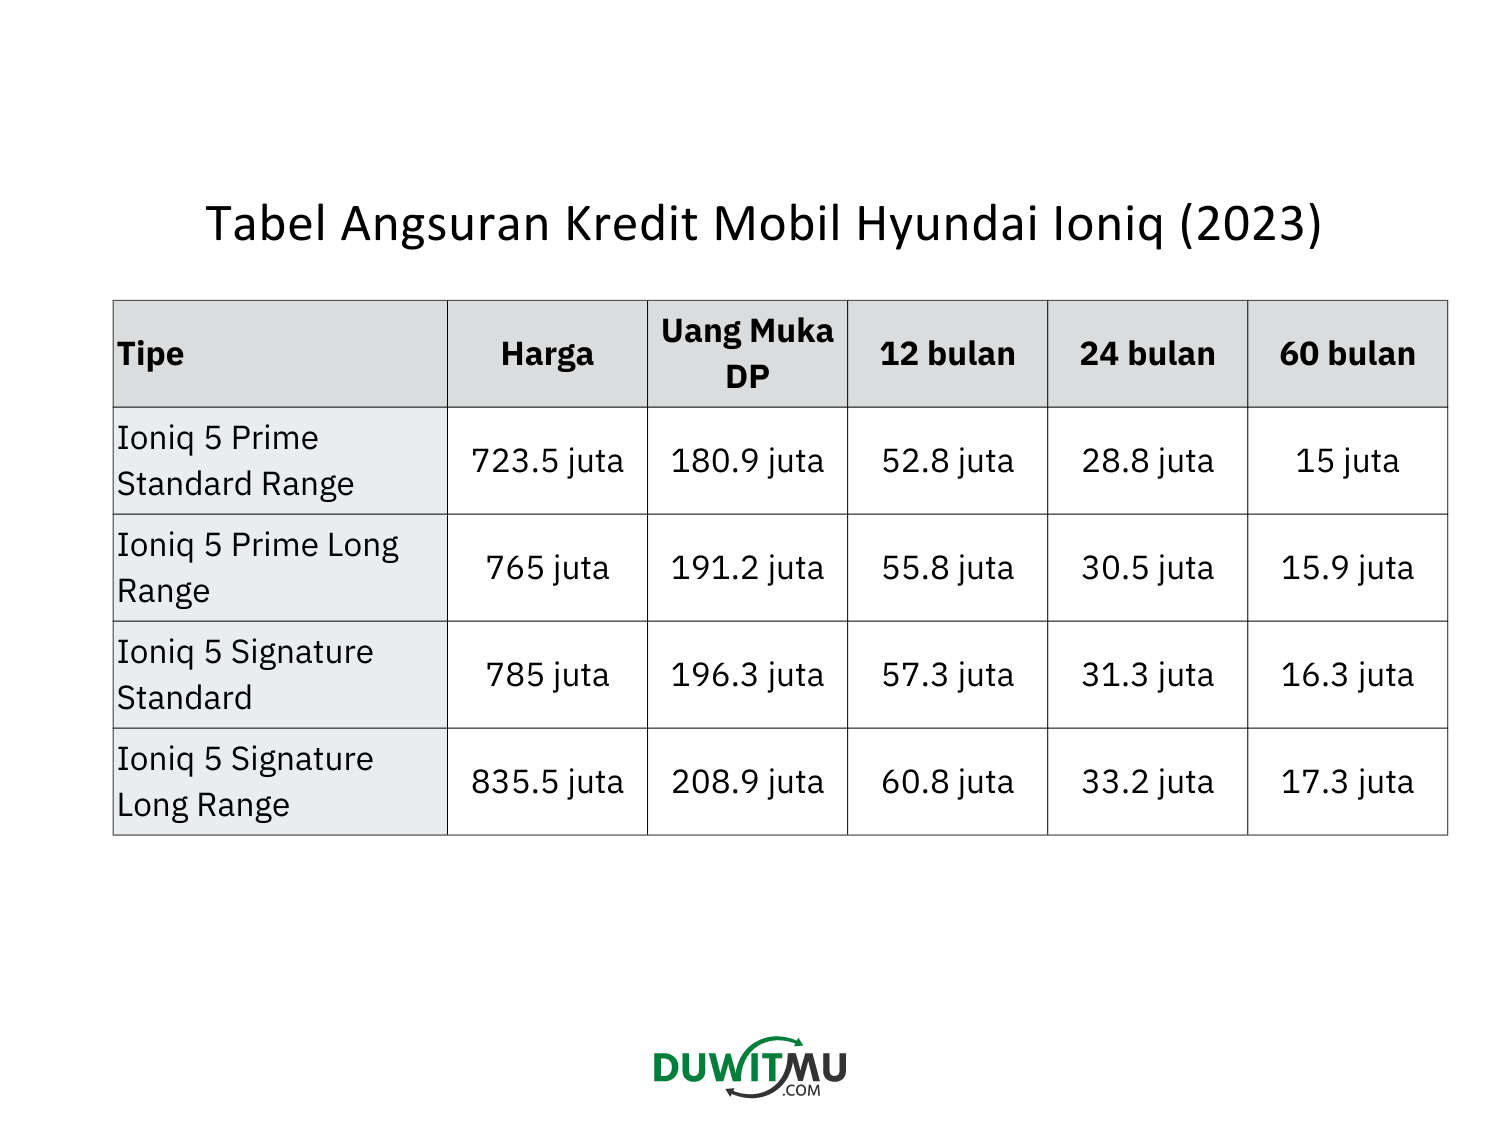 Tabel Angsuran Hyundai Ioniq, harga, uang muka